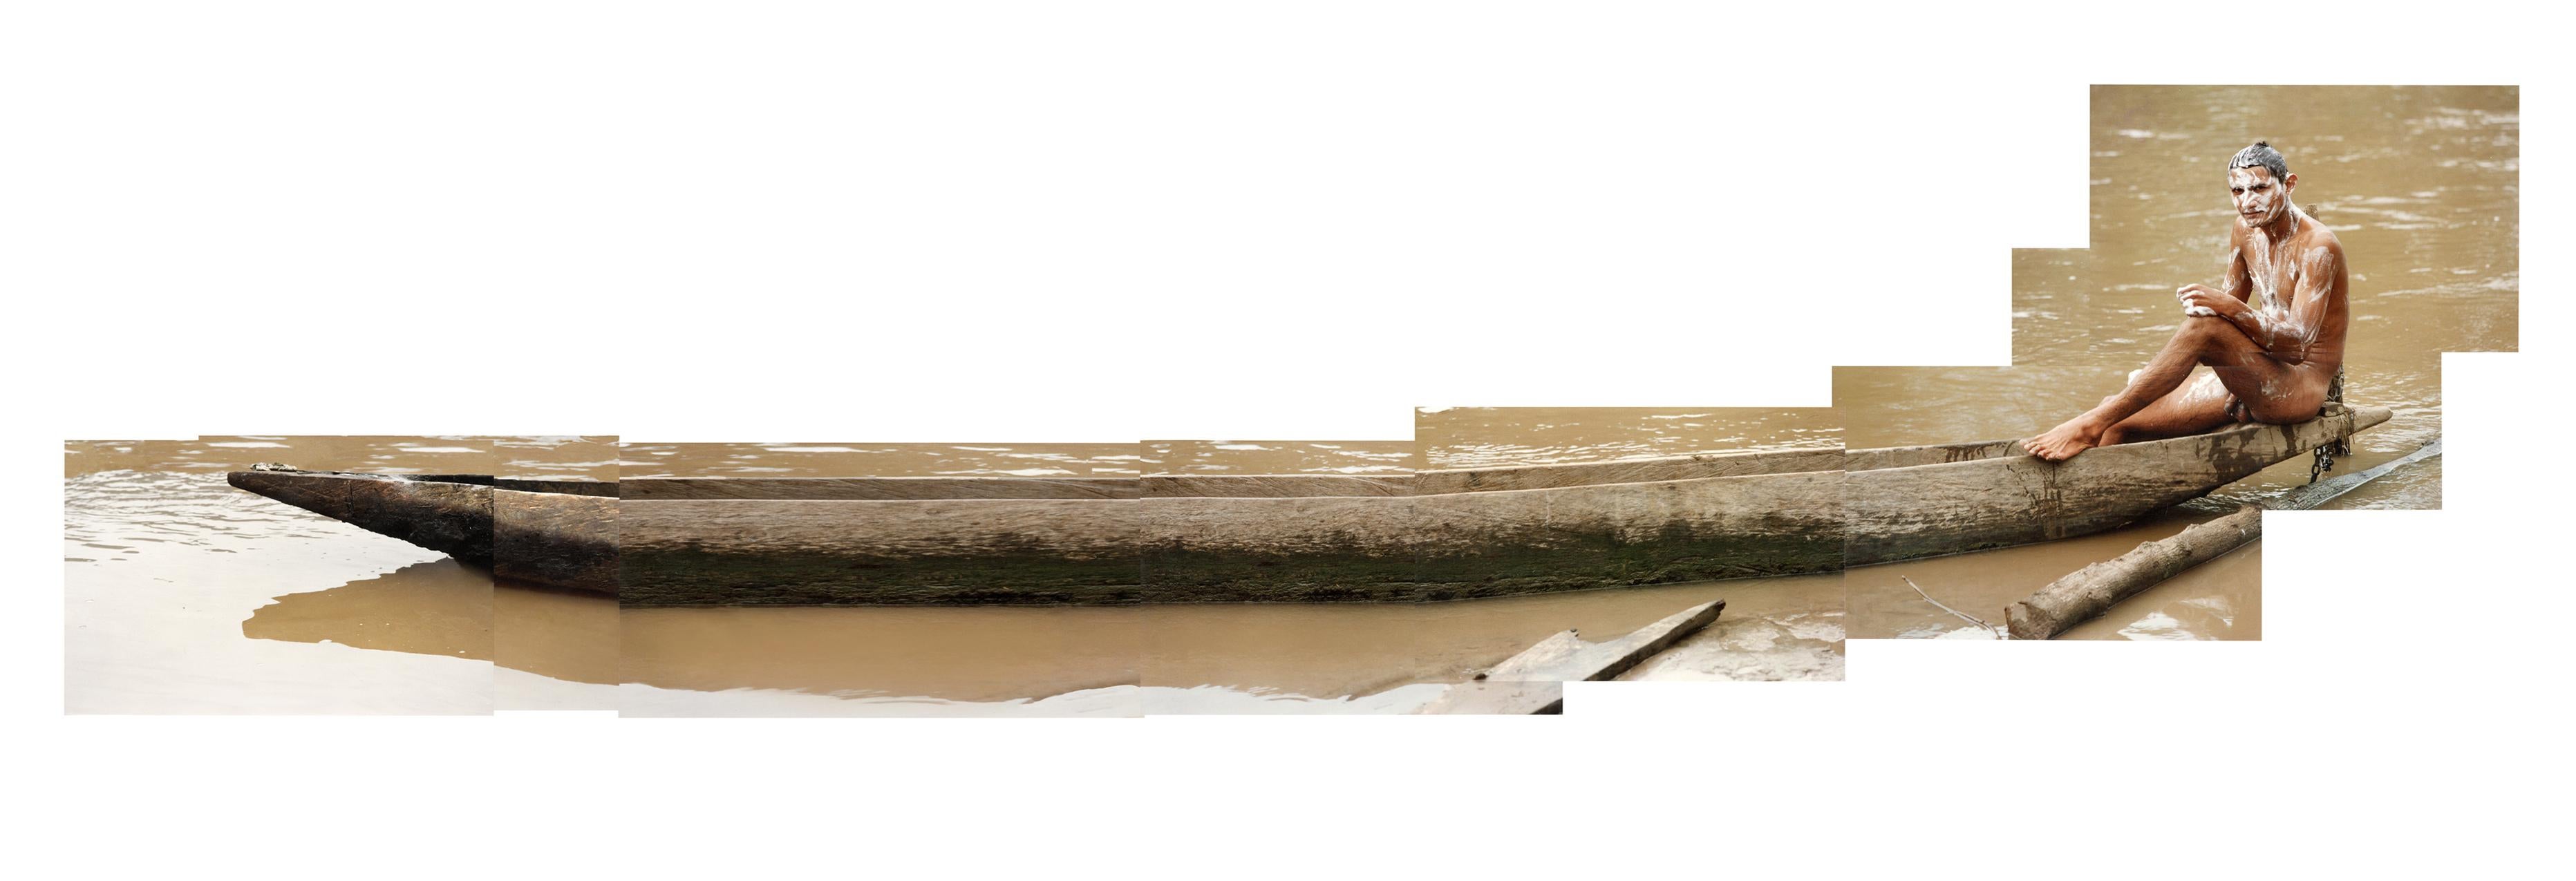 Mann im Kanu. Nackt. Fotografie auf Leinwand gedruckt, in Streifen montiert